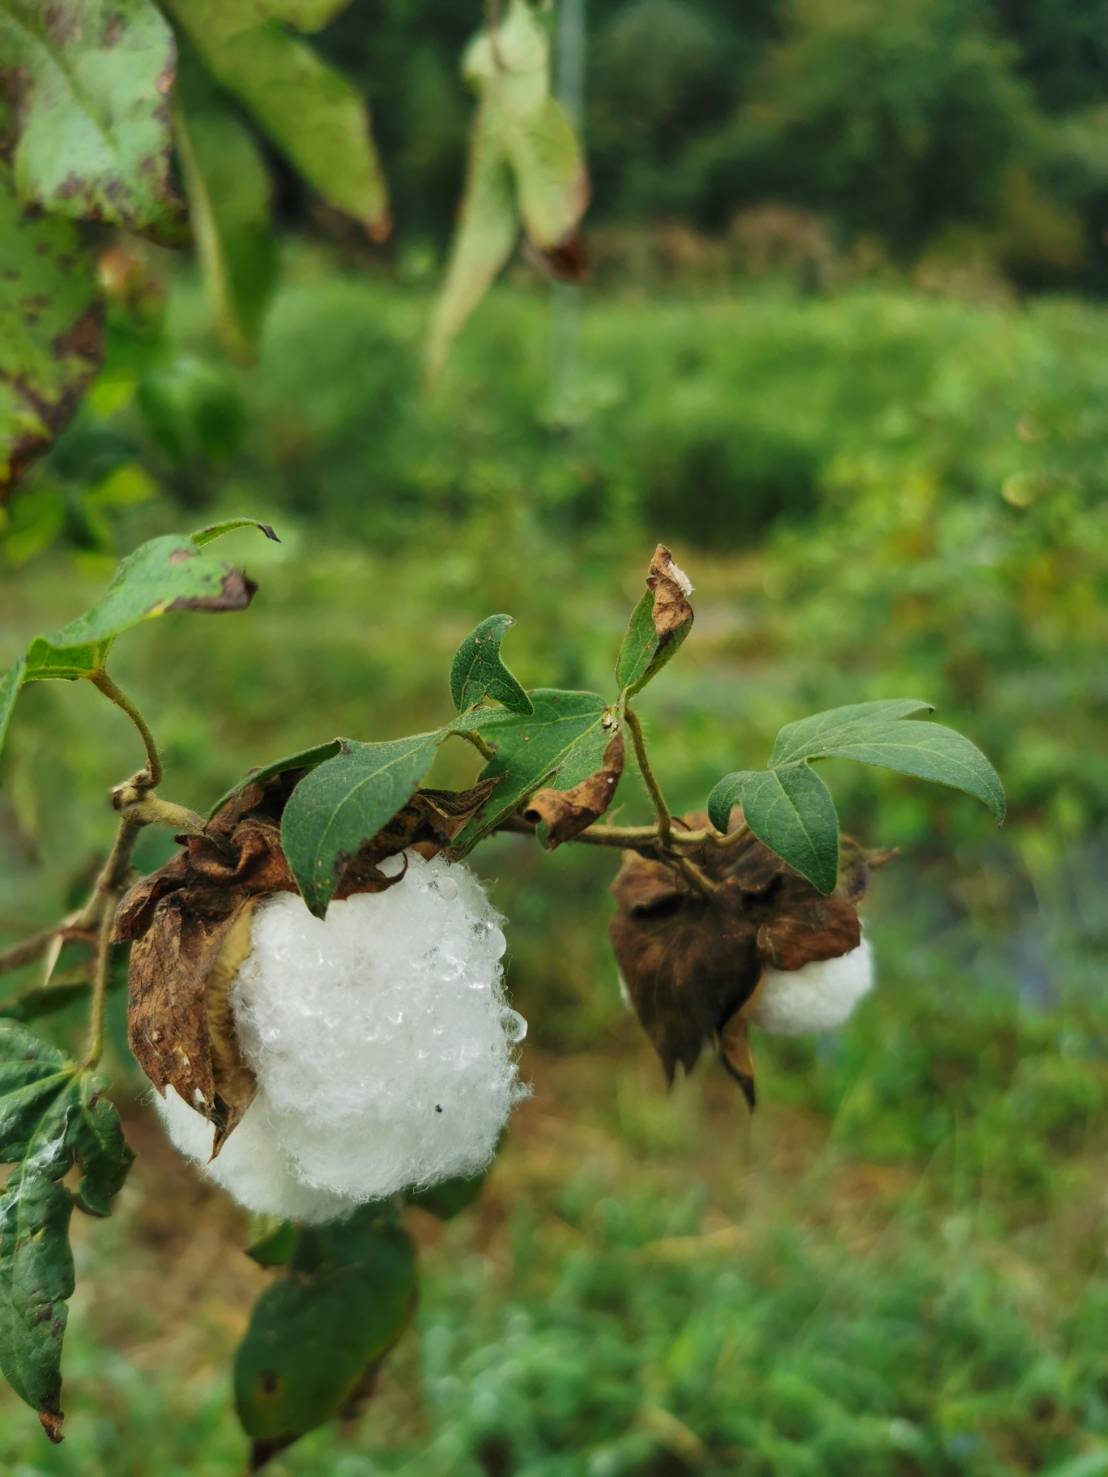 ふわふわとした触り心地、綿の優しい香り、それが和綿の特徴です。弊社では、オーガニックコットンを国内で栽培し、徹底的に無農薬で育てています。私たちは環境にやさしい栽培方法を採用し、土壌や水源を守りながら、豊かな自然の力だけで和綿を作り上げています。身につける方々に安心と快適さを提供するために、品質にこだわり繊細な糸を丹念に紡ぎ上げています。ぜひ、和綿の魅力をご体感ください。わたから わたからつむぐ マインド松井 日本の綿 わた 和綿 綿 和綿とは コットン コットンとは コットン１００％ オーガニックコットン 日用品 商品 無農薬 わめん 育て方 種類 洋綿 綿花 エコ エシカル エシカル商品 サスティナブル 糸紡ぎ 収穫 特徴 綿摘み 種 販売 豊か 暮らし 豊かな暮らし 生活 ガラ紡 コットン 生地 おすすめ 収穫 国産和綿 国産の綿 国産 生産地 自社畑 生地 岐阜 熊本　綿 わた コットン オーガニックコットン 綿１００％　コットン１００％　オーガニックコットン１００％　綿 わた コットン オーガニックコットン 綿１００％　コットン１００％　オーガニックコットン１００％　